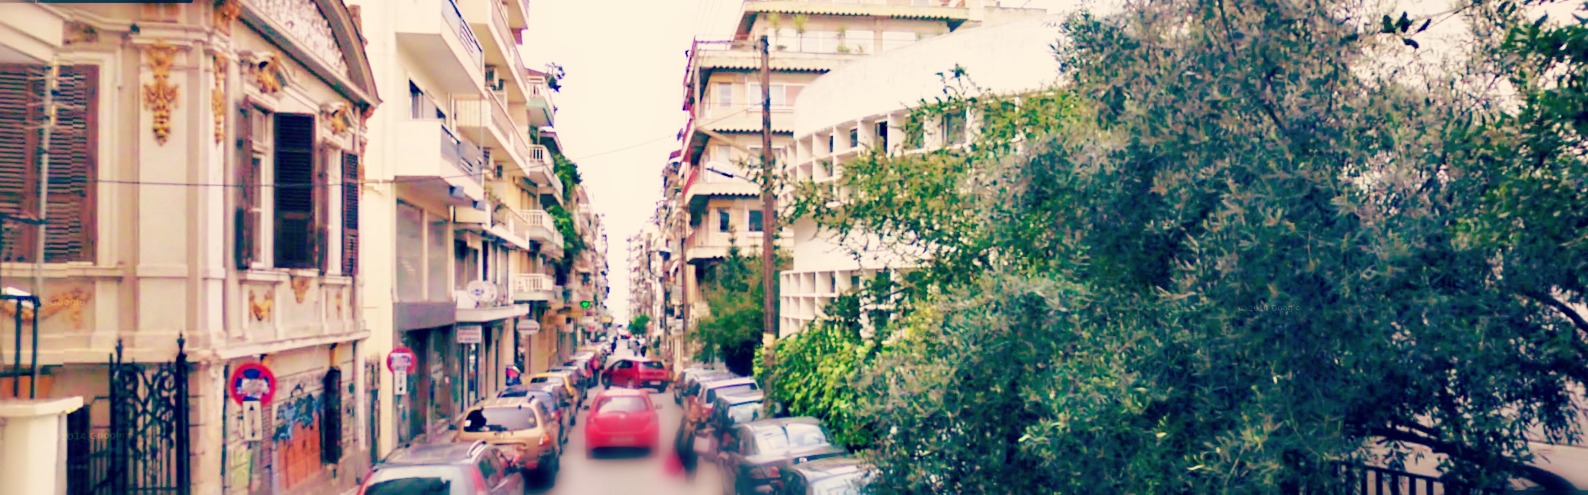 Η οδός Ευζώνων - Θεσσαλονίκη